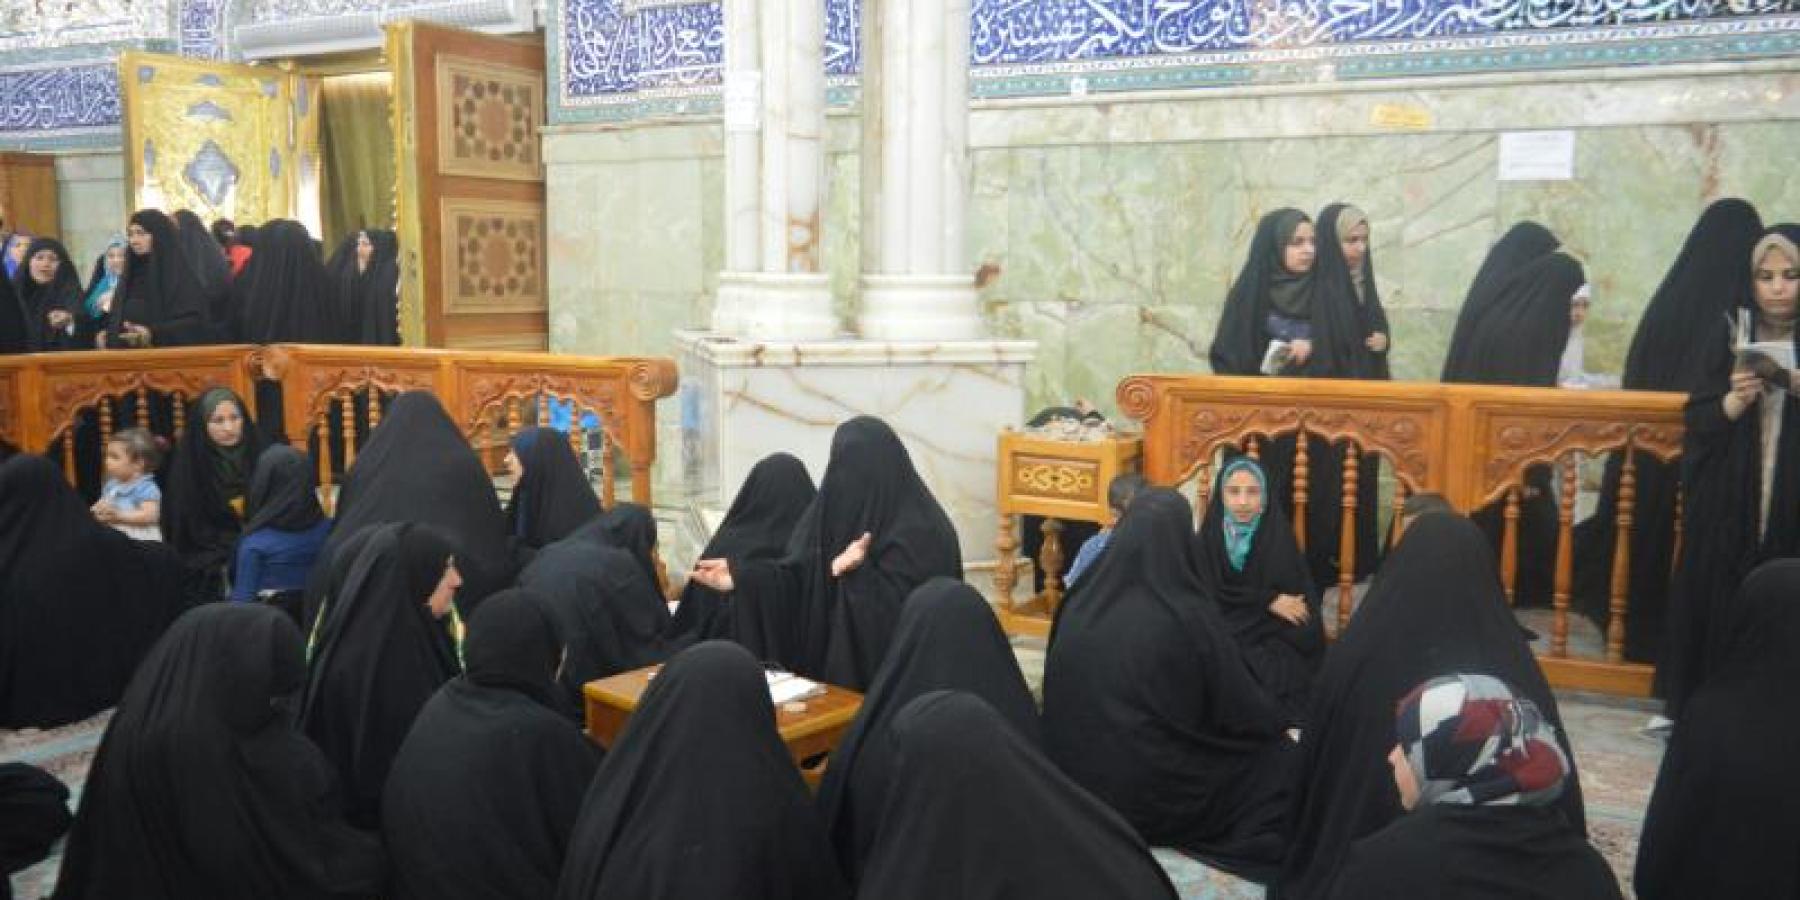  شعبة التعليم الديني النسوي تطلق أسبوع العروة الوثقى الثقافي